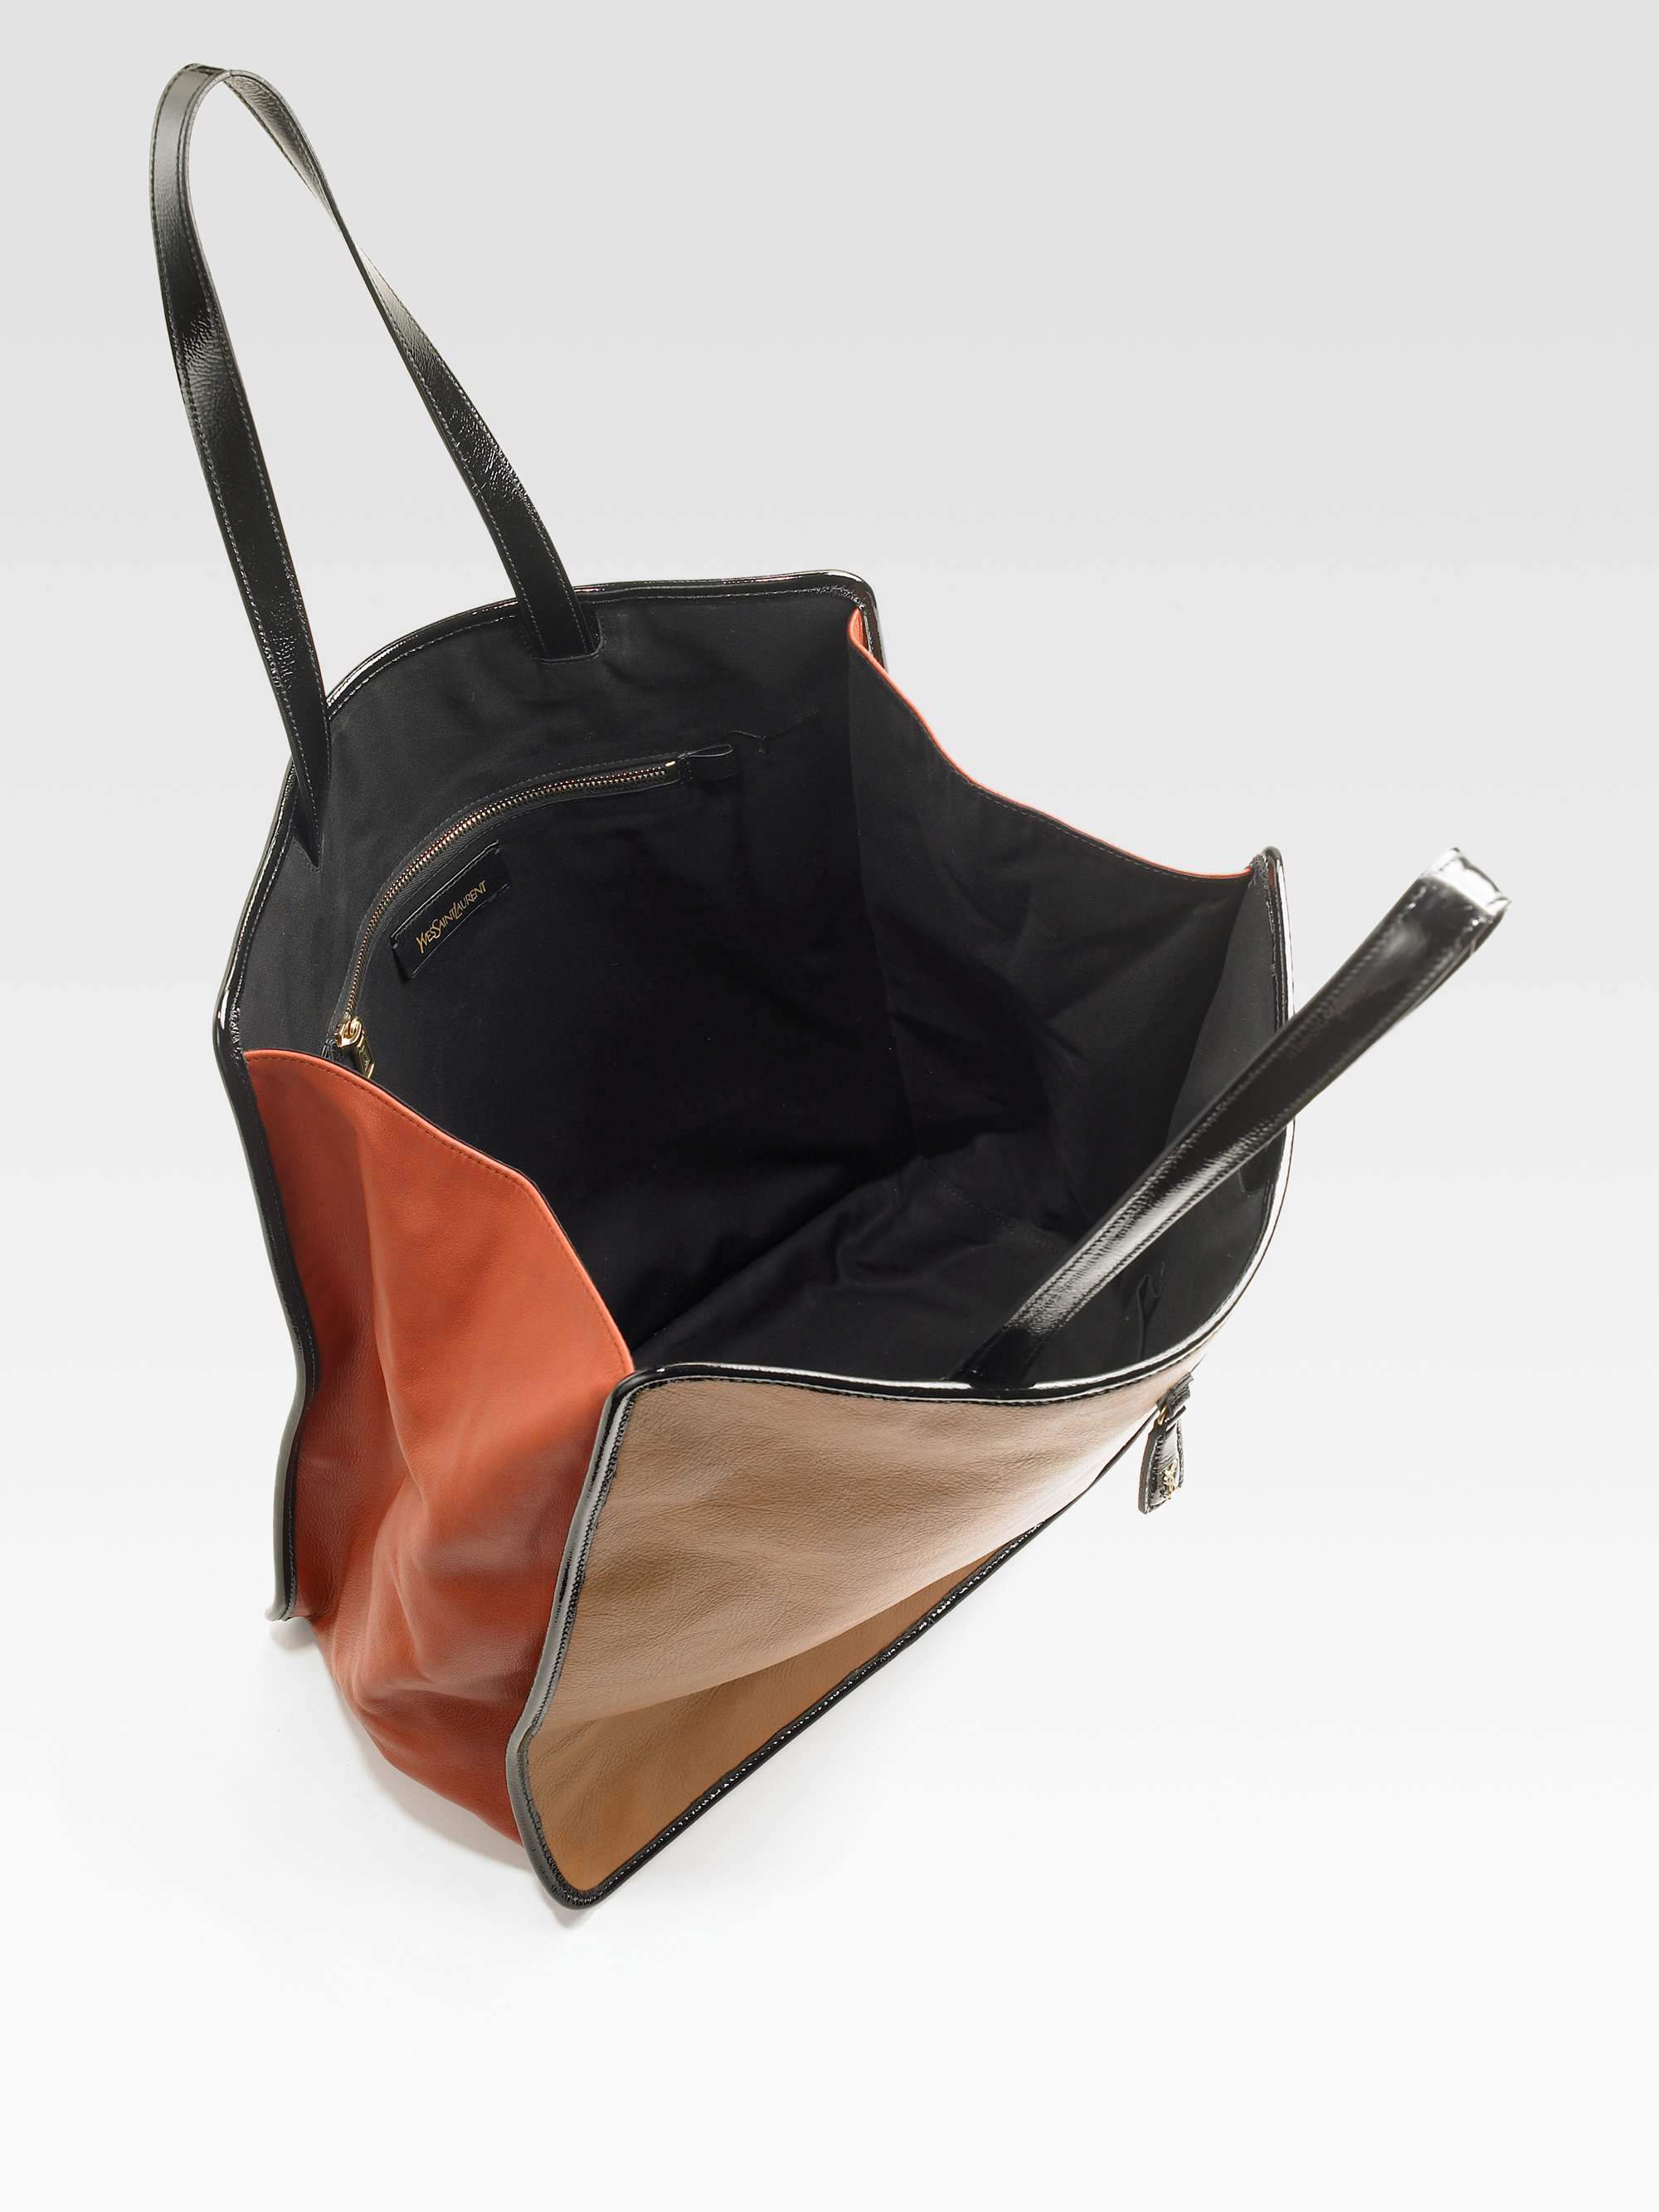 brown ysl leather handbag  